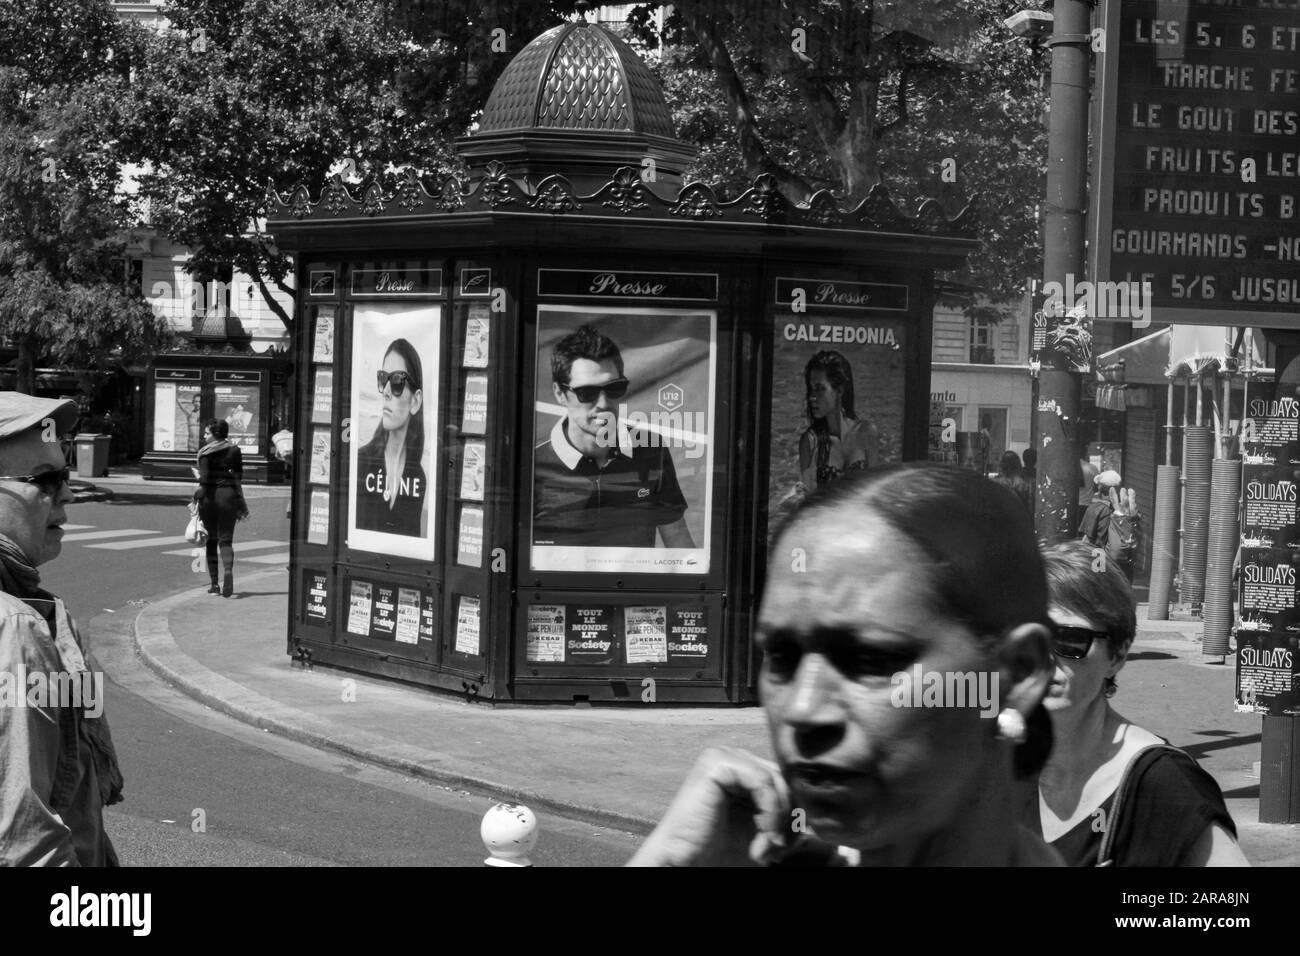 Drei Gesichter, Presse-Kiosk, Poster von Celine und Calzedonia, Paris, Frankreich, Europa Stockfoto